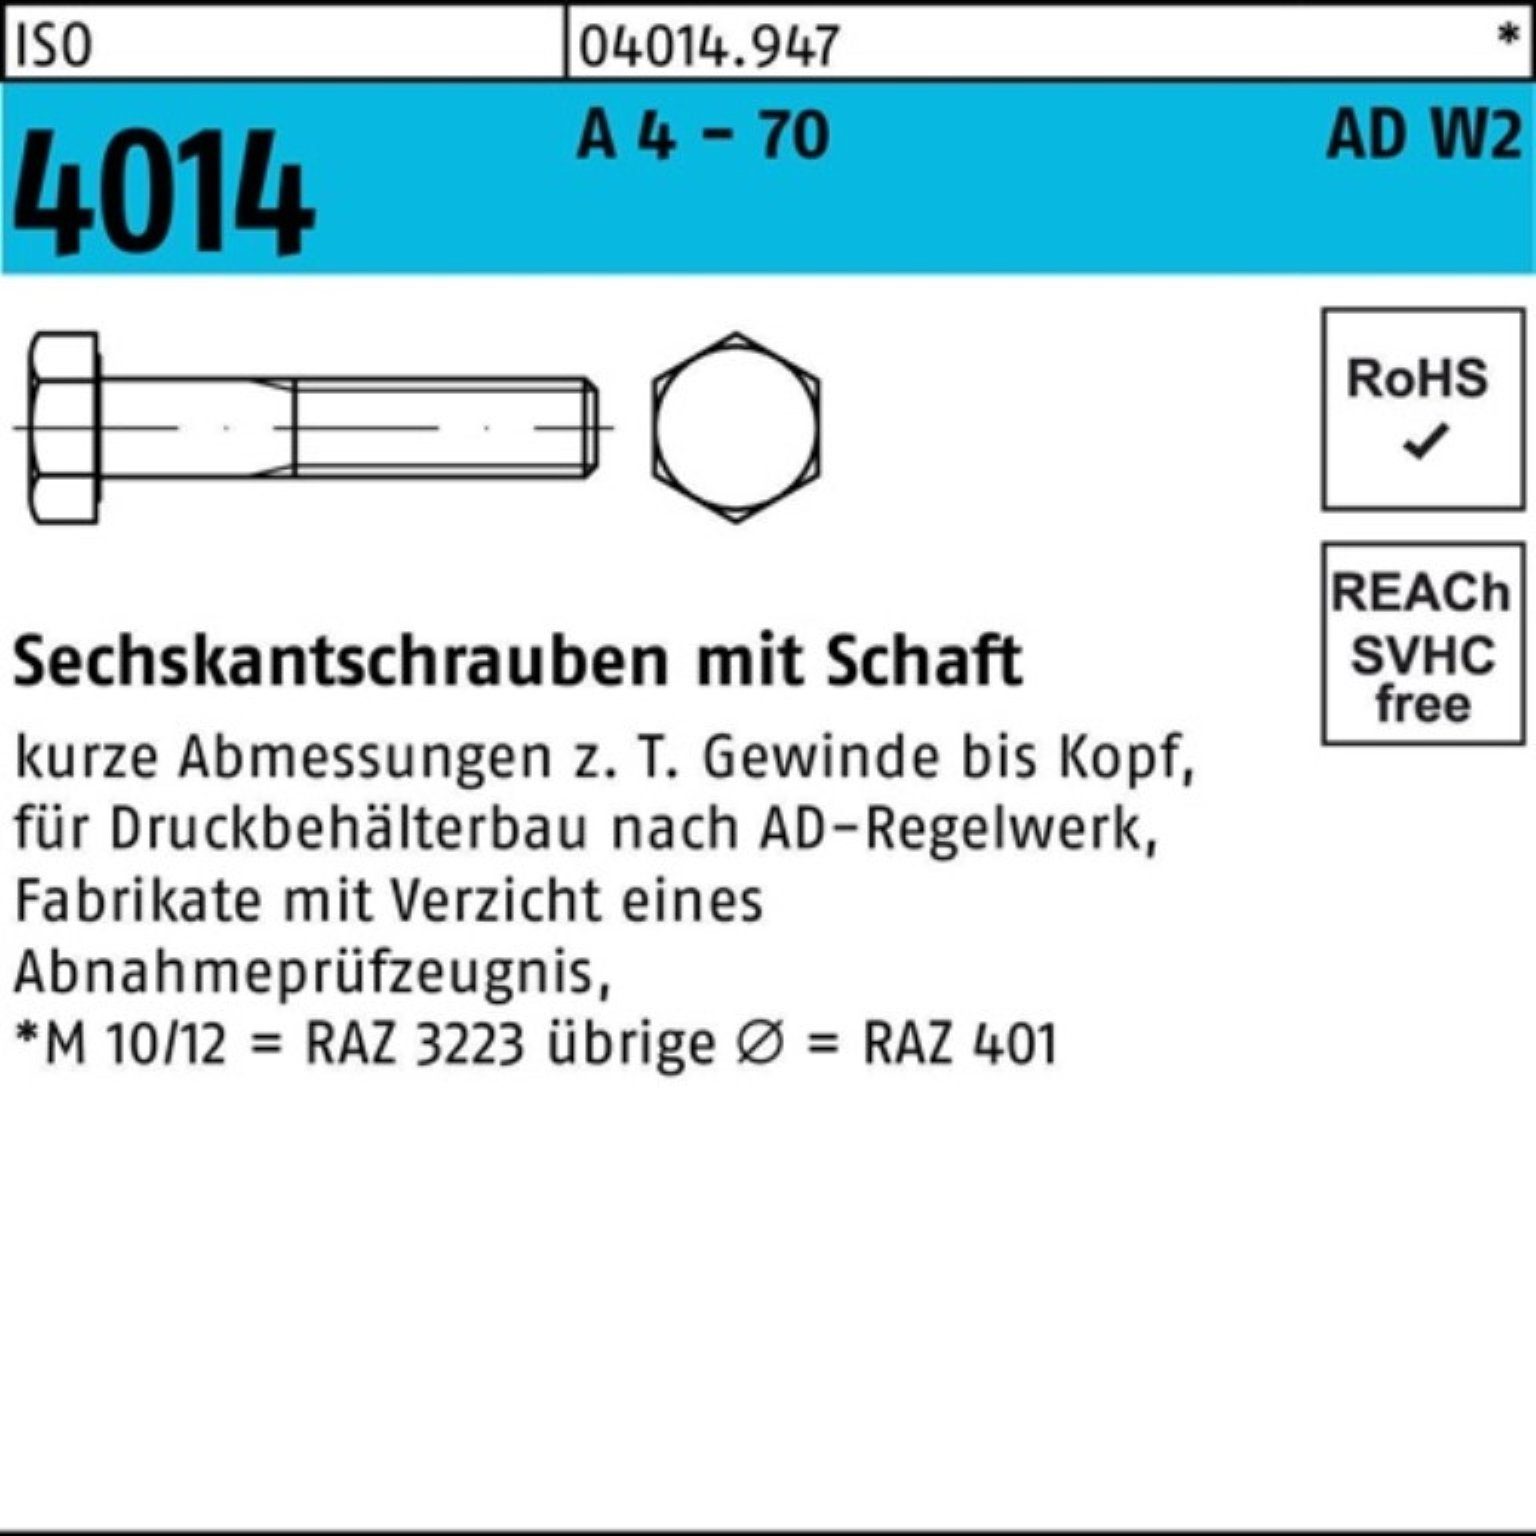 Bufab Sechskantschraube 100er Pack Sechskantschraube ISO 4014 Schaft M10x 80 A 4 - 70 AD-W2 50